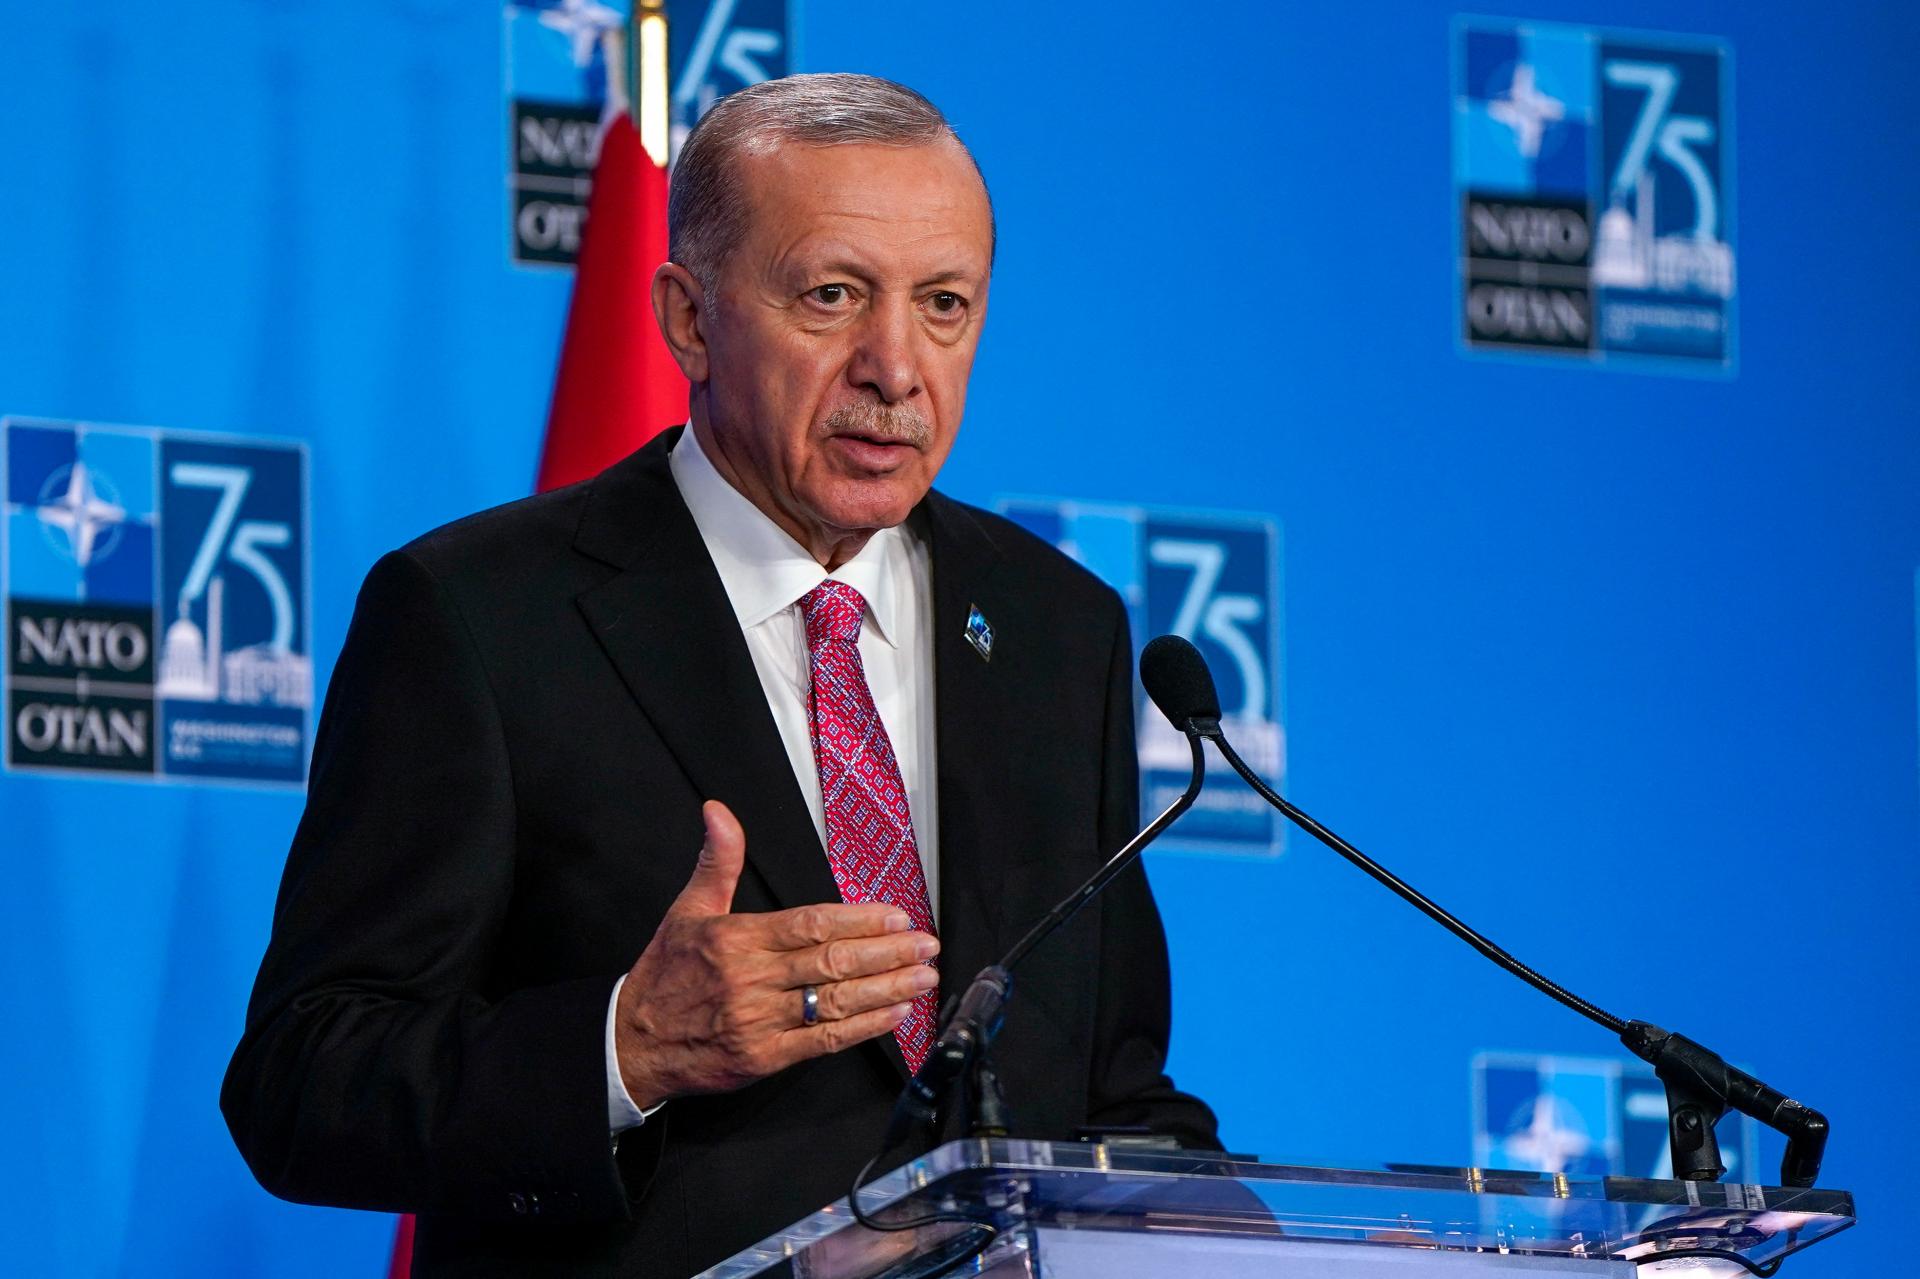 NATO nemôže pokračovať v partnerstve s Izraelom, vyhlásil Erdogan